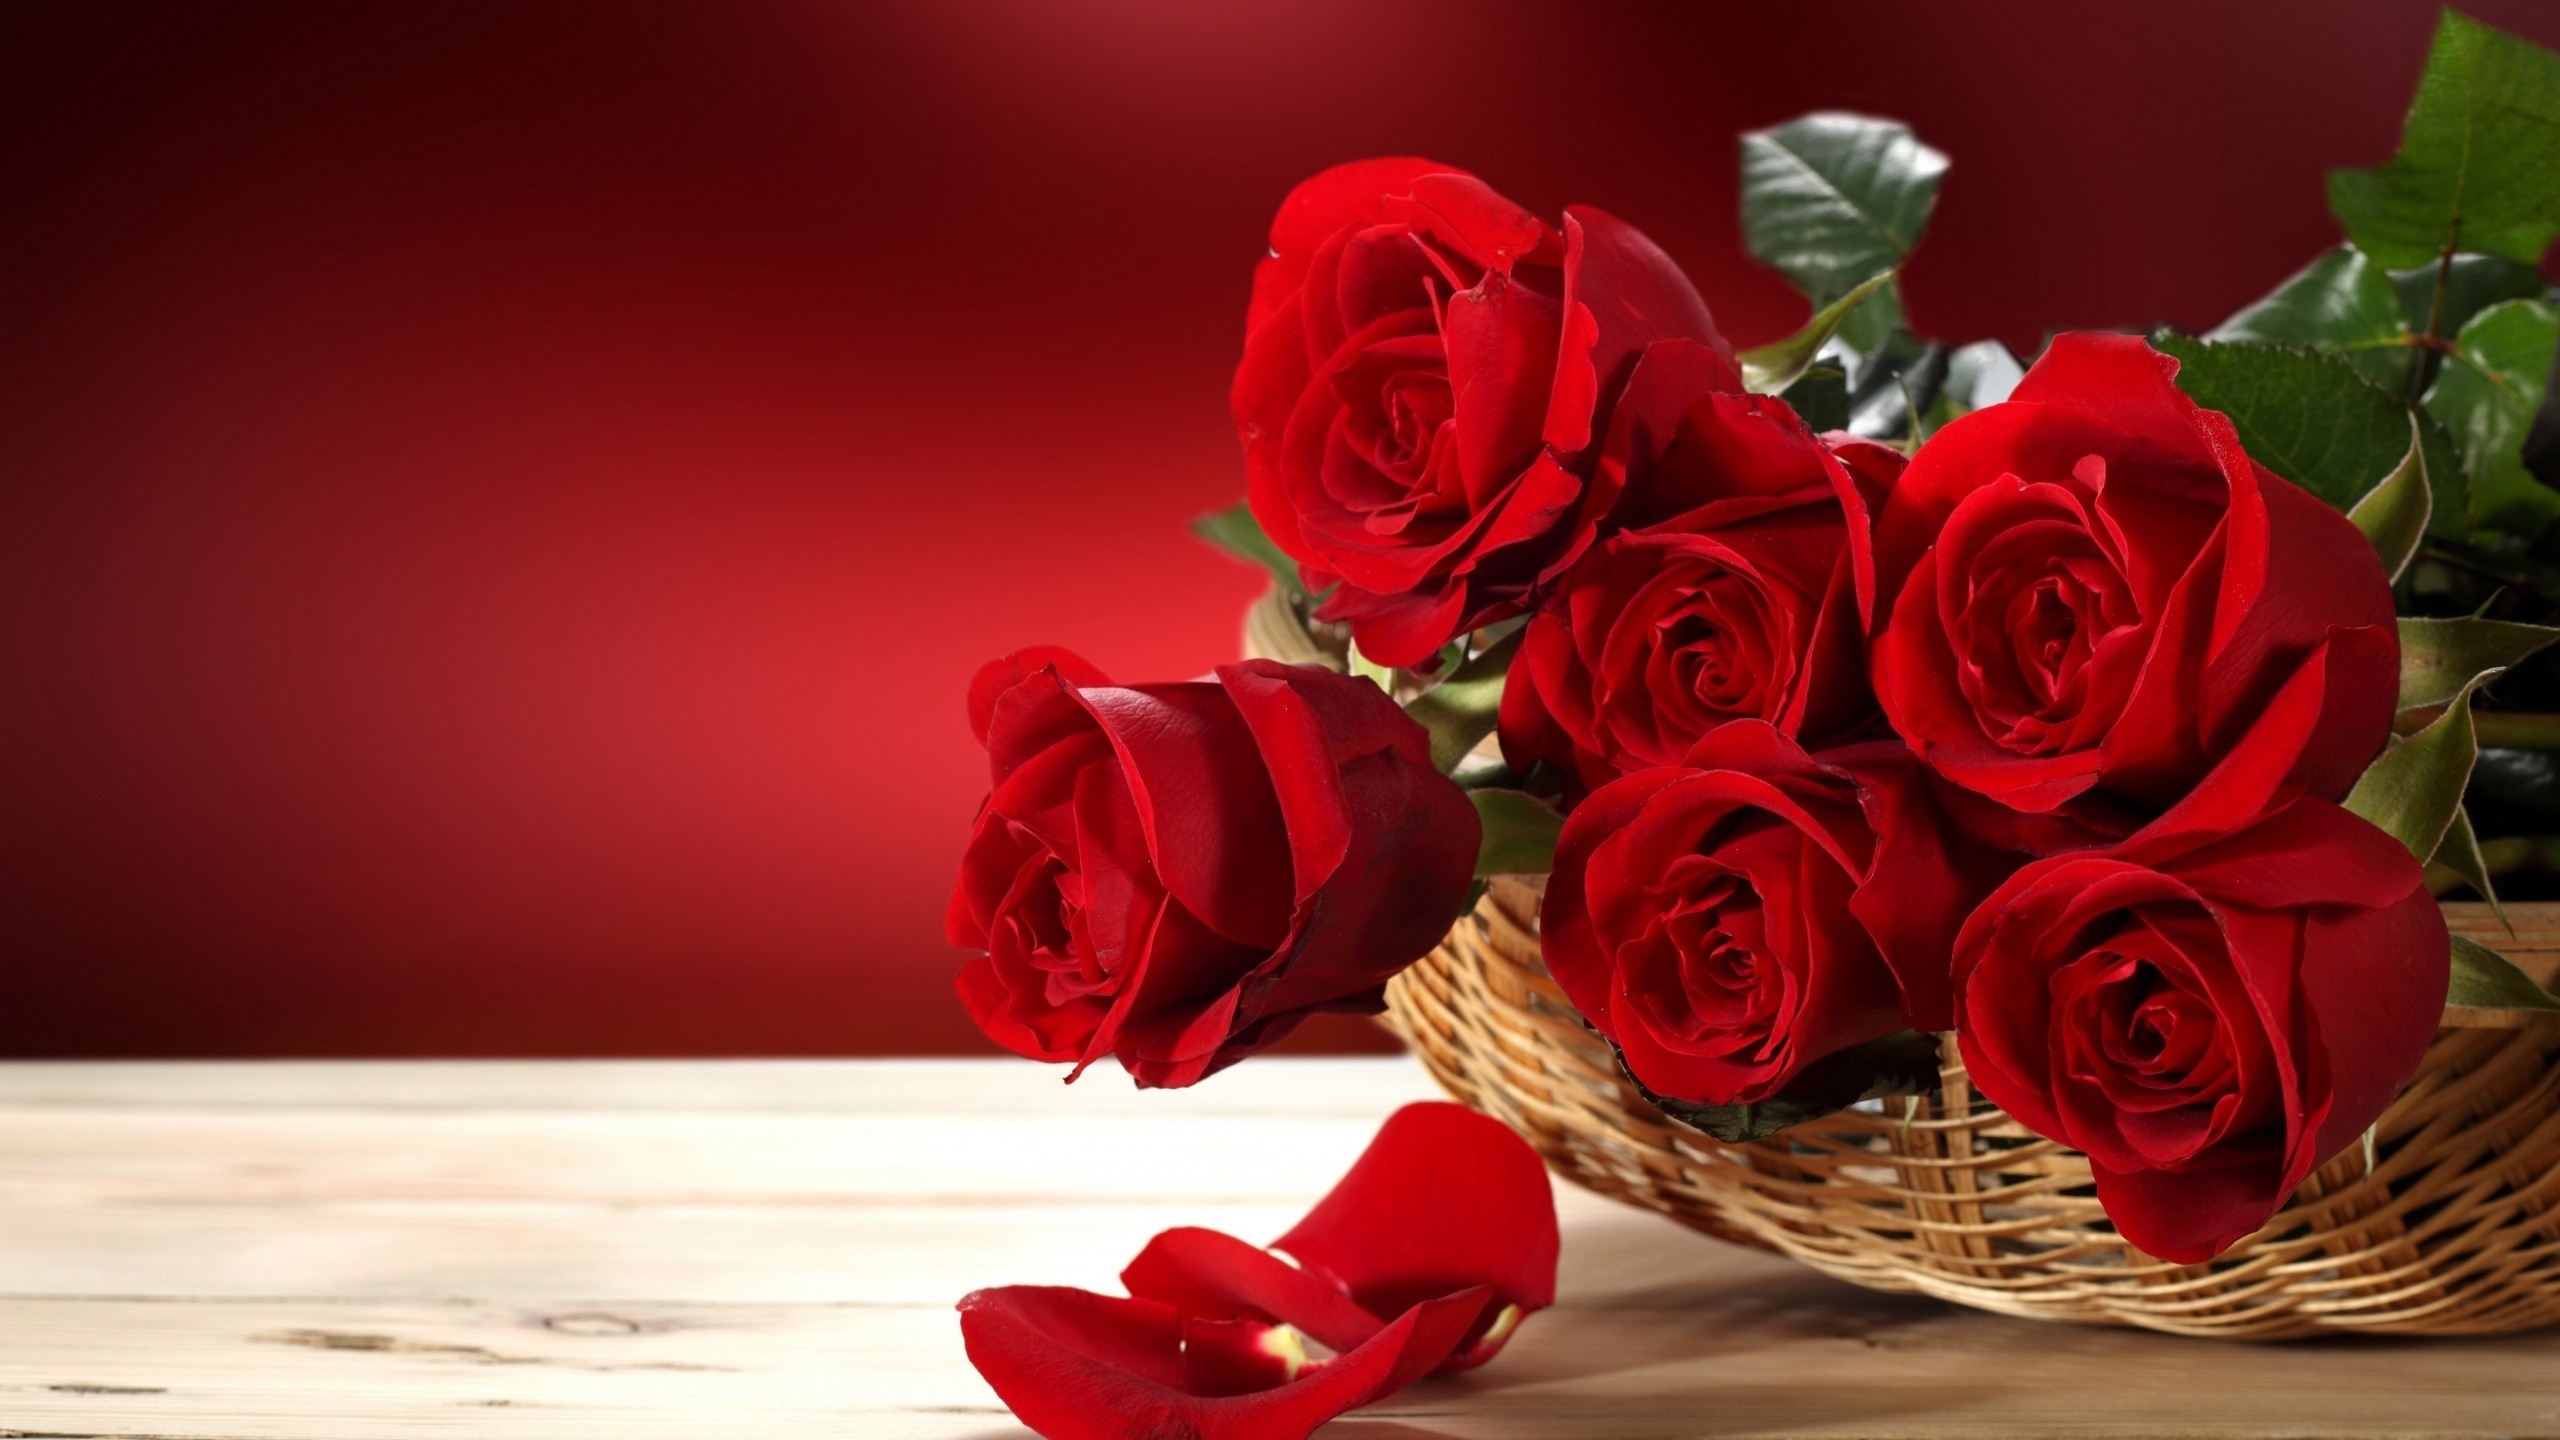 Fresh Red Roses for 2560x1440 HDTV resolution